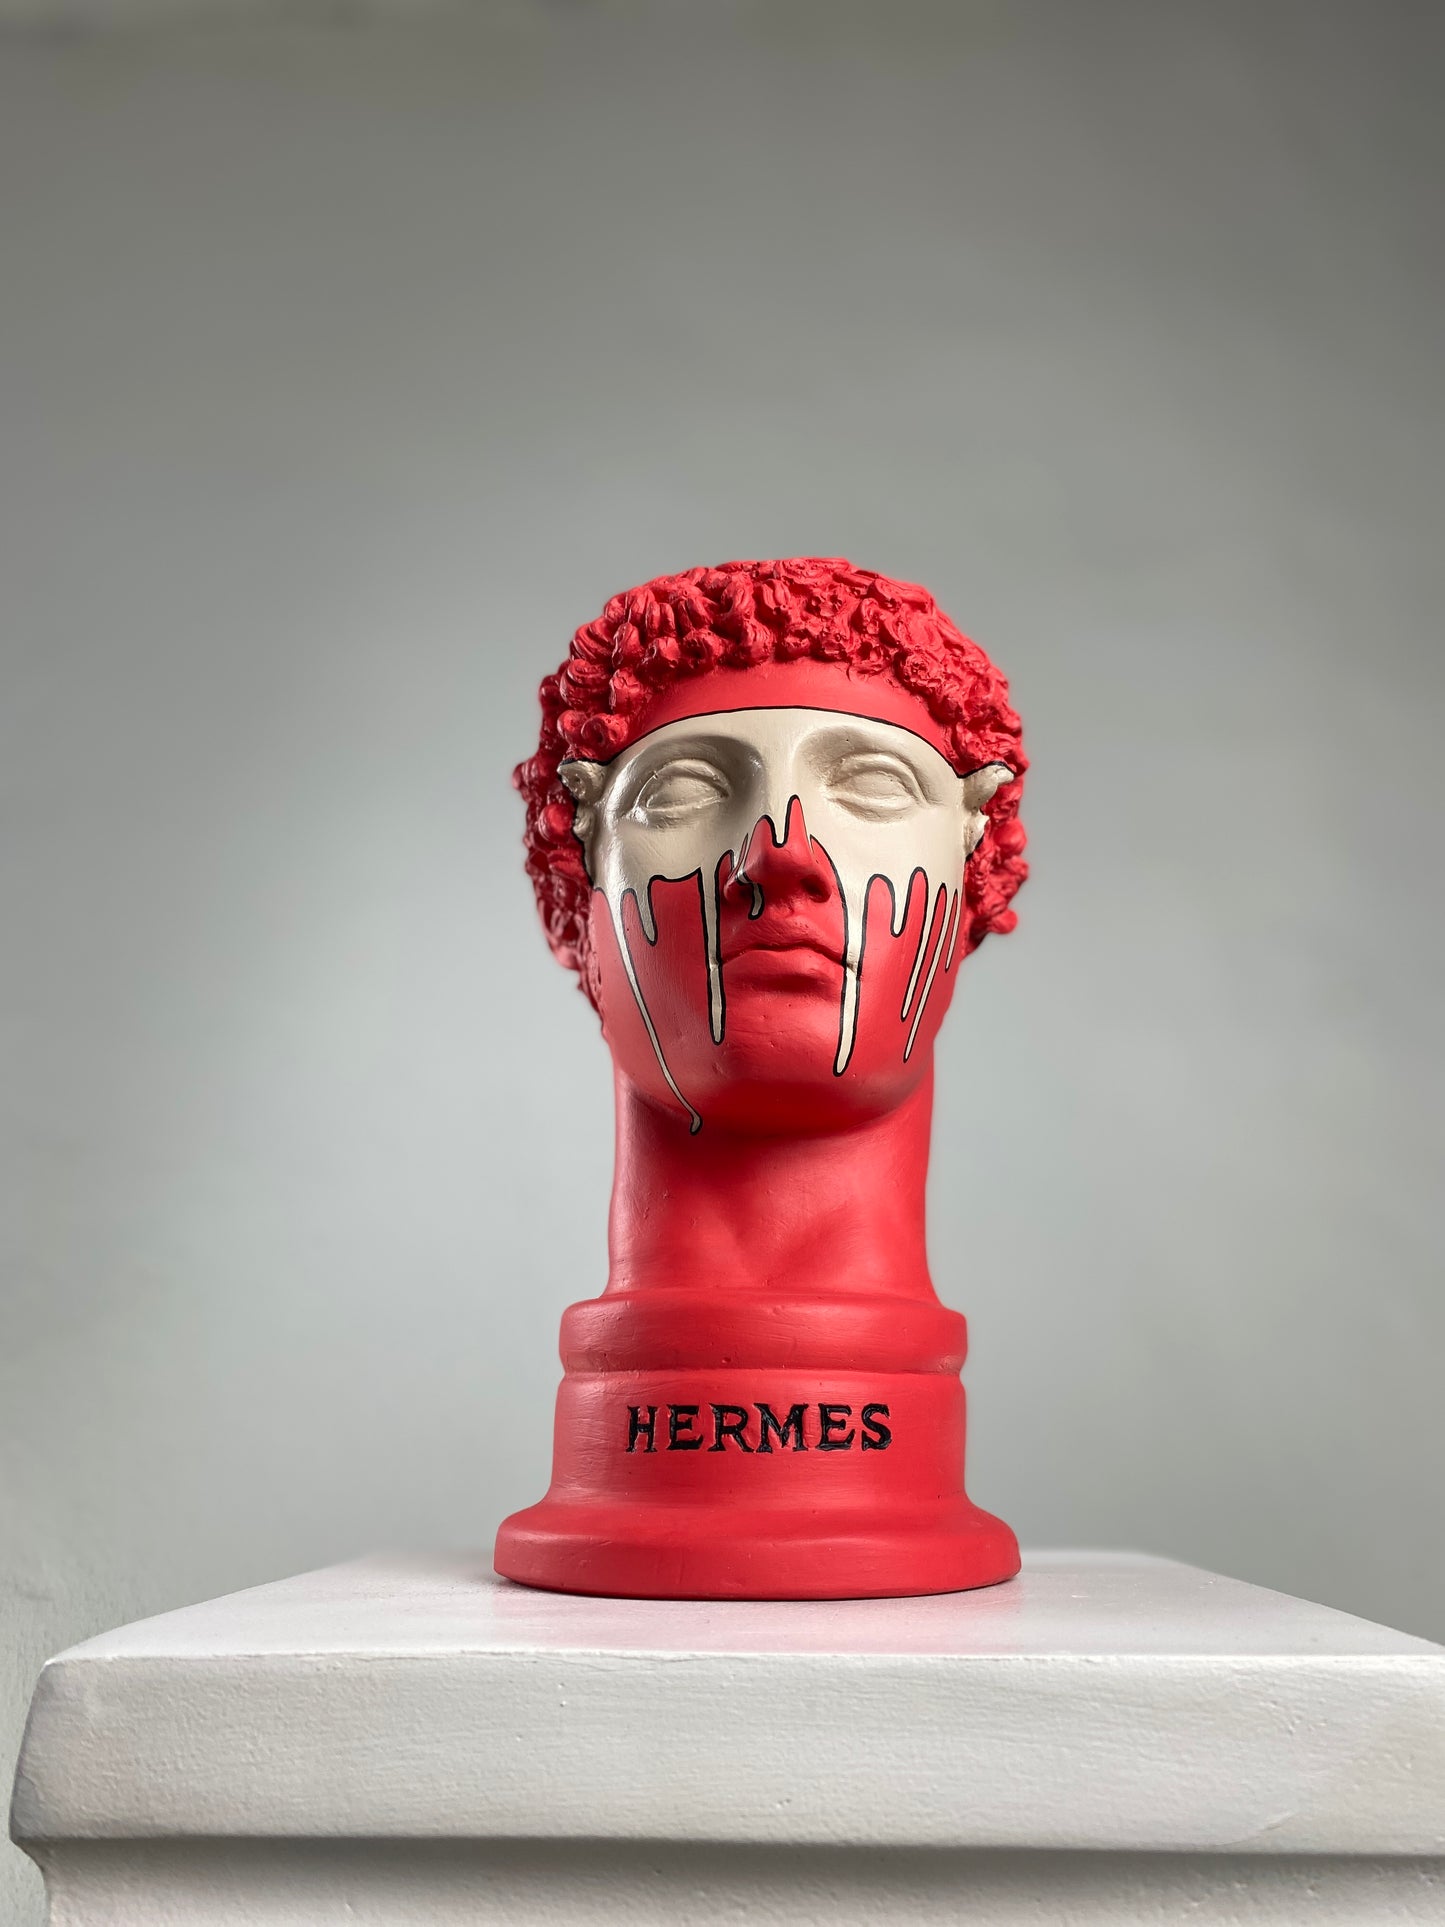 Hermes 'Dynamite' Pop Art Sculpture, Modern Home Decor